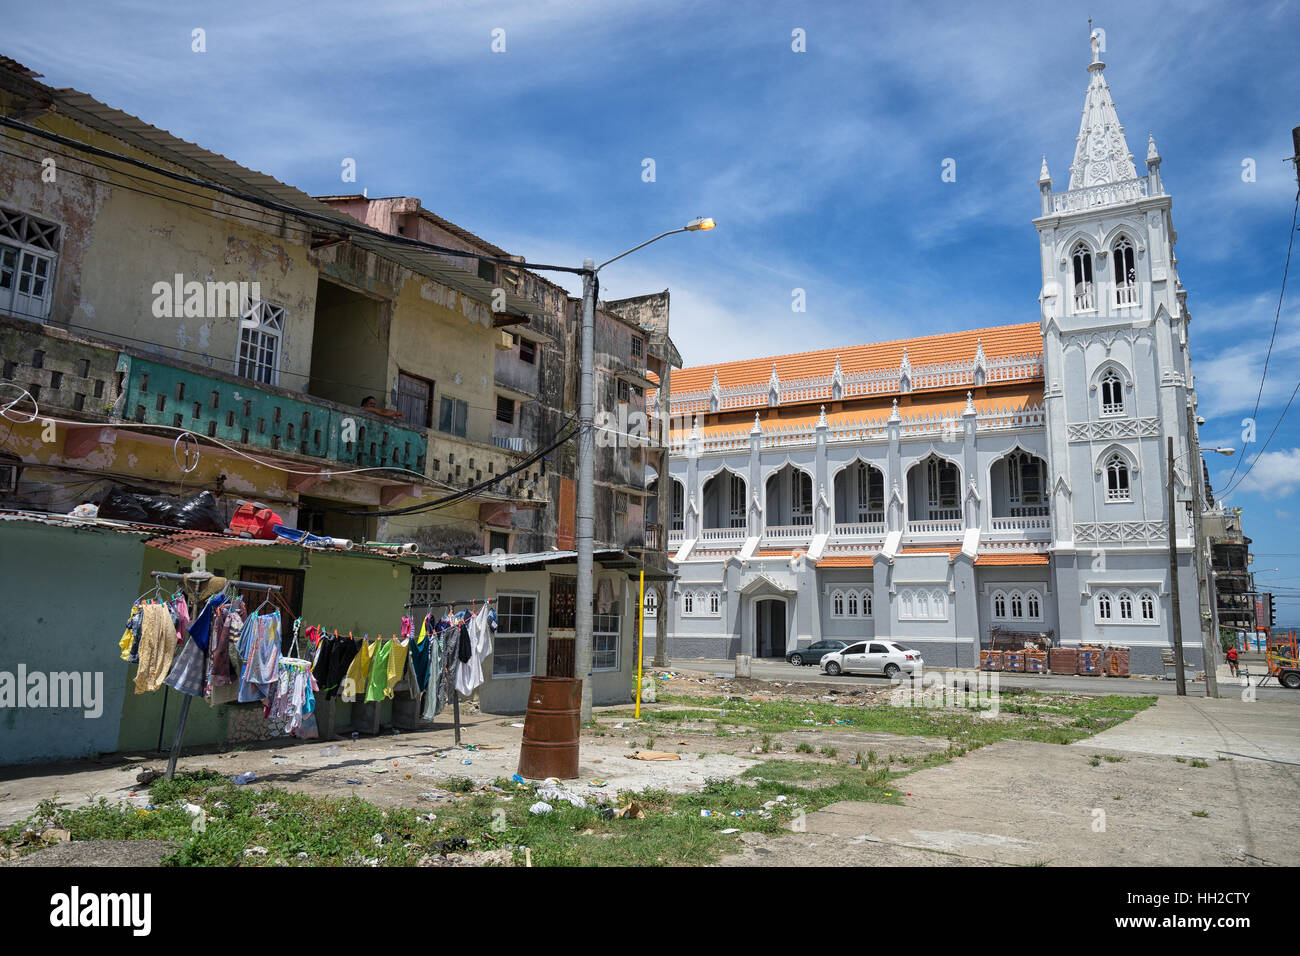 9 juin 2016, Colon, Panama : une église rénovée se démarque dans les bidonvilles de la ville portuaire Banque D'Images